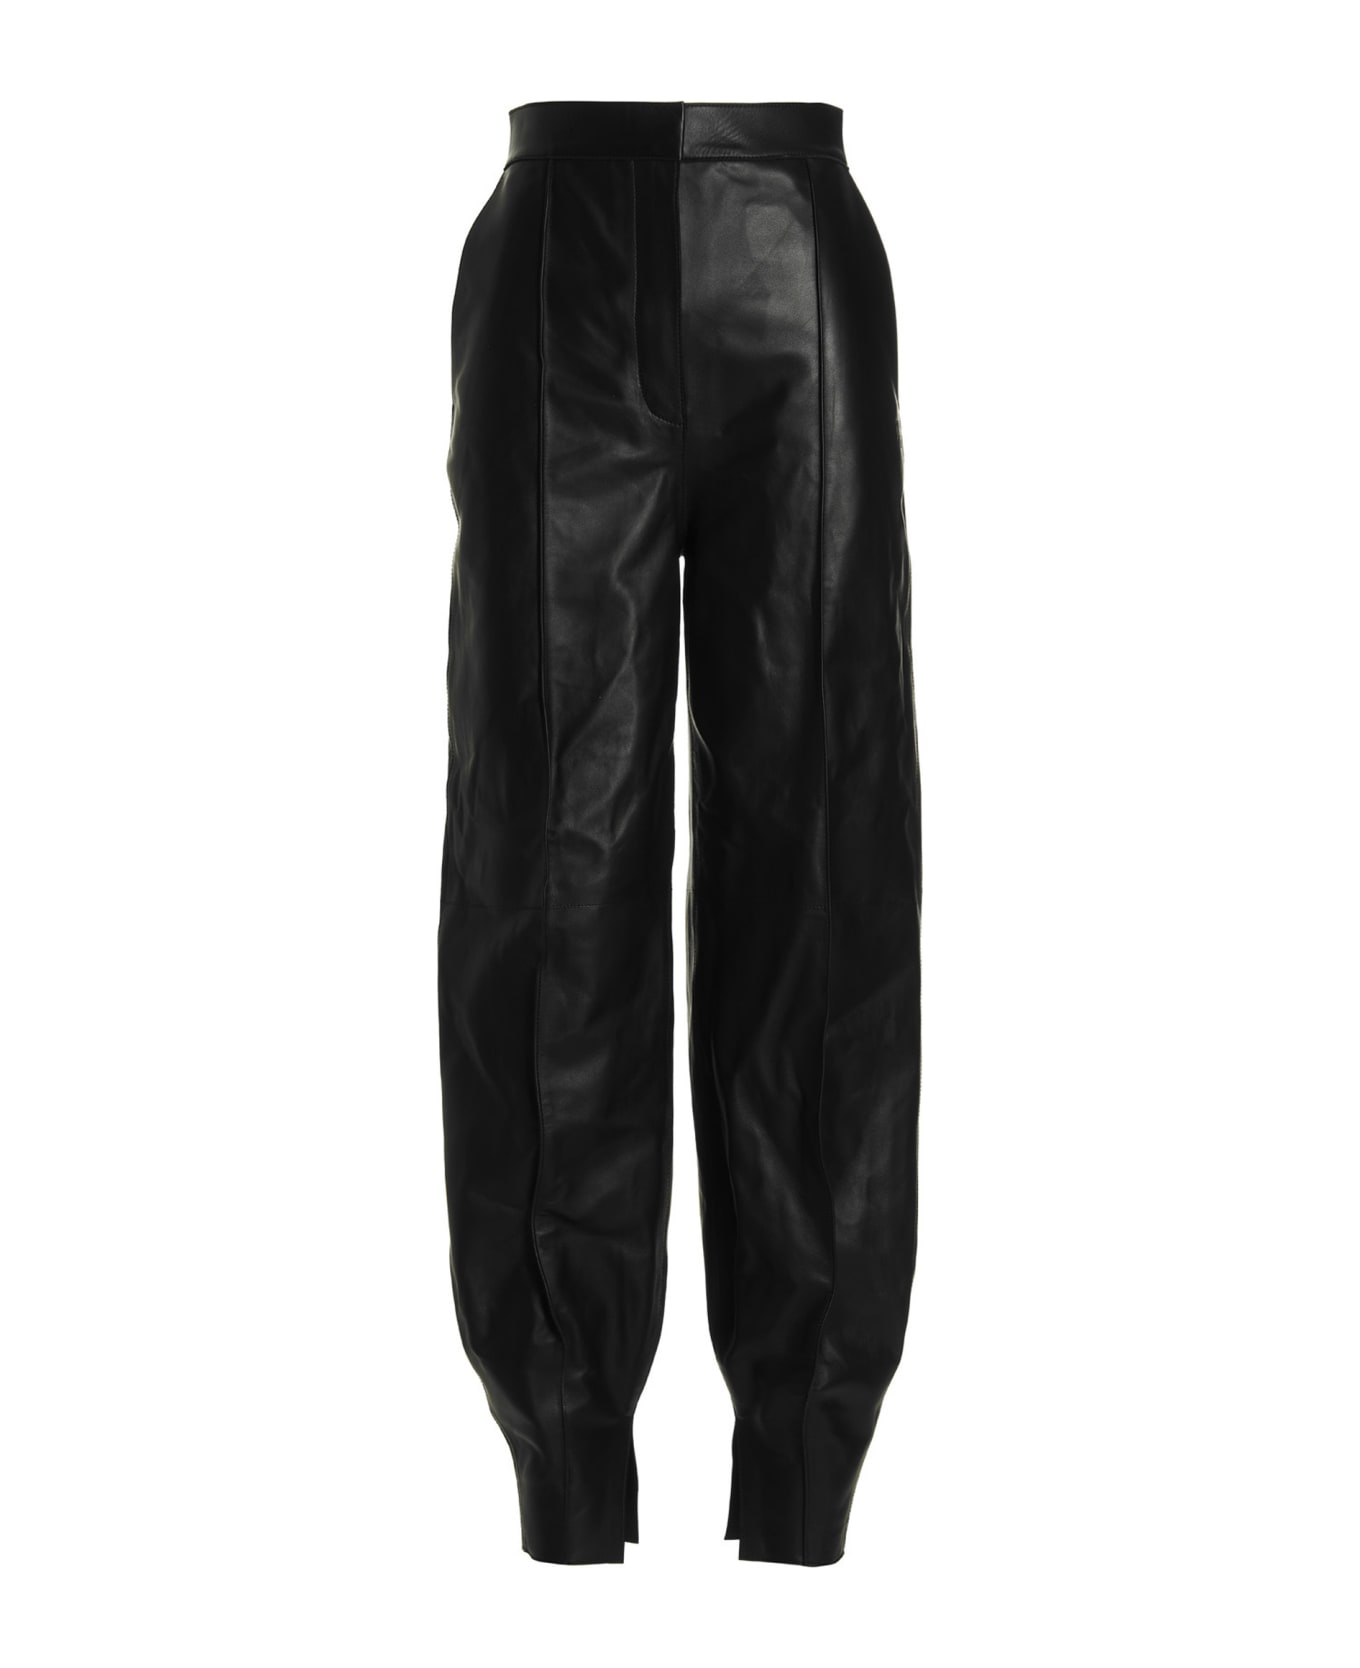 Loewe Leather Balloon-style Pants - Black  